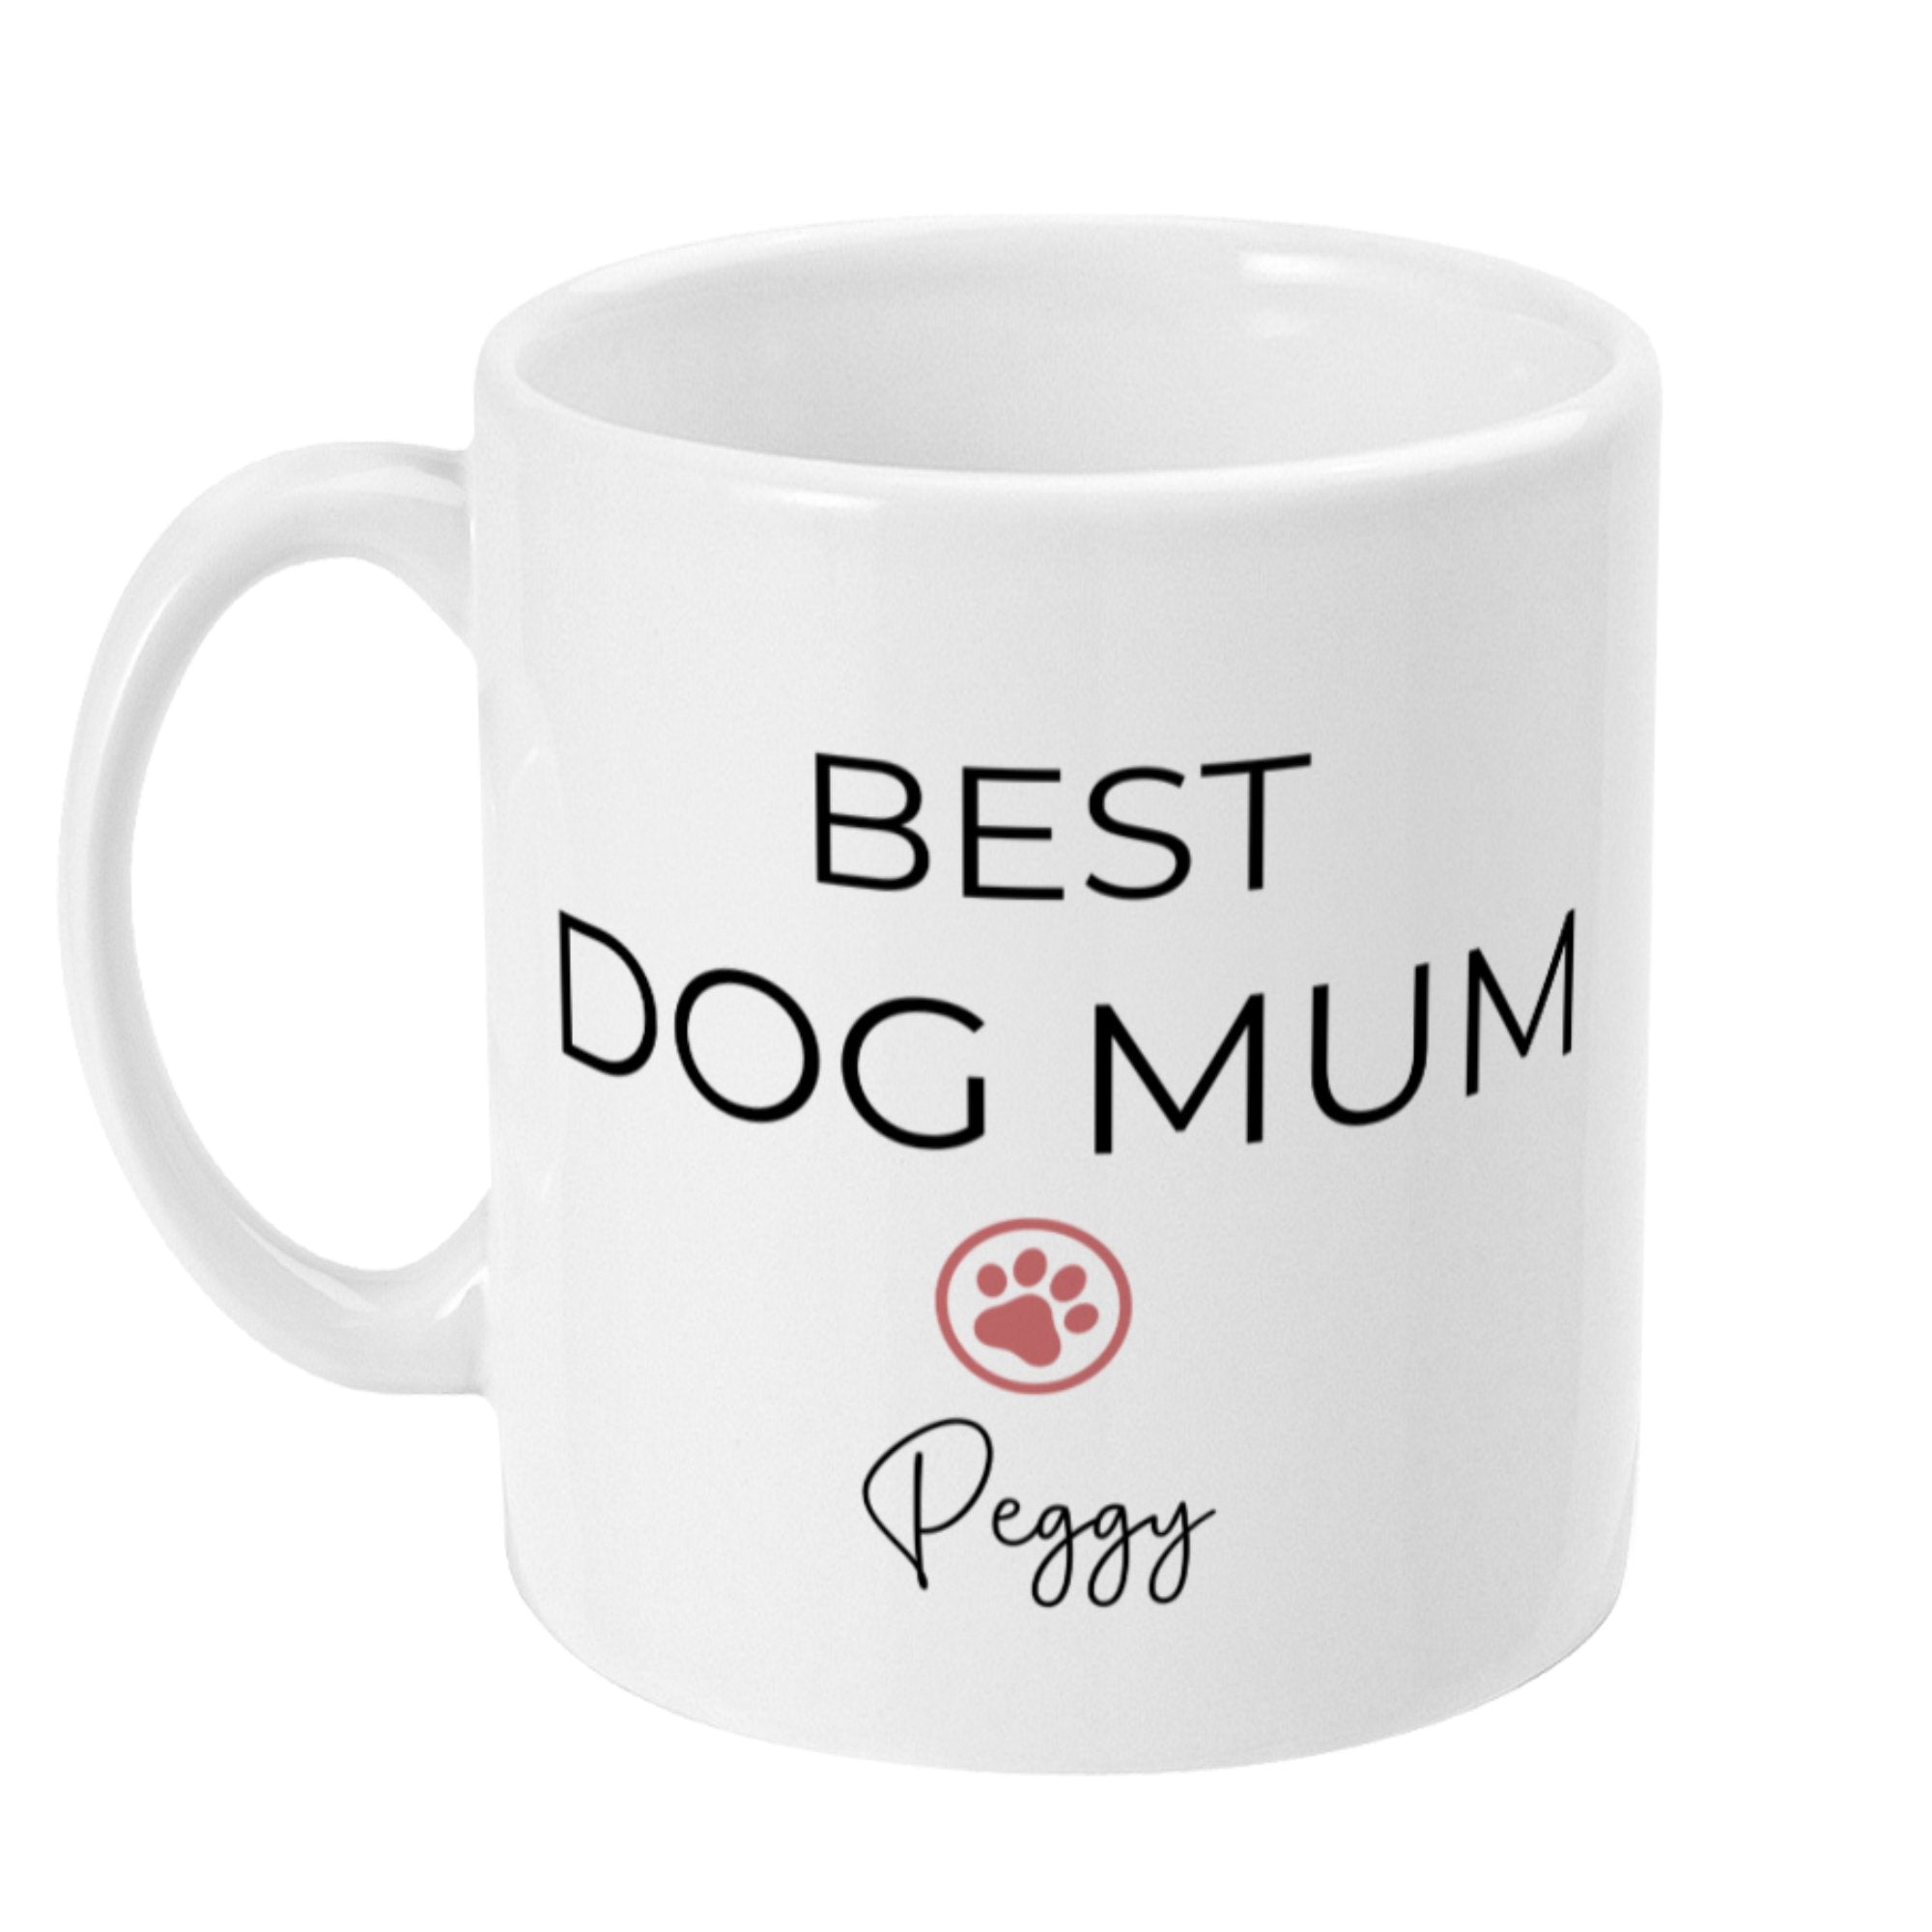 Personalised Mug Best Dog Mum & Dog Name - Sweetie